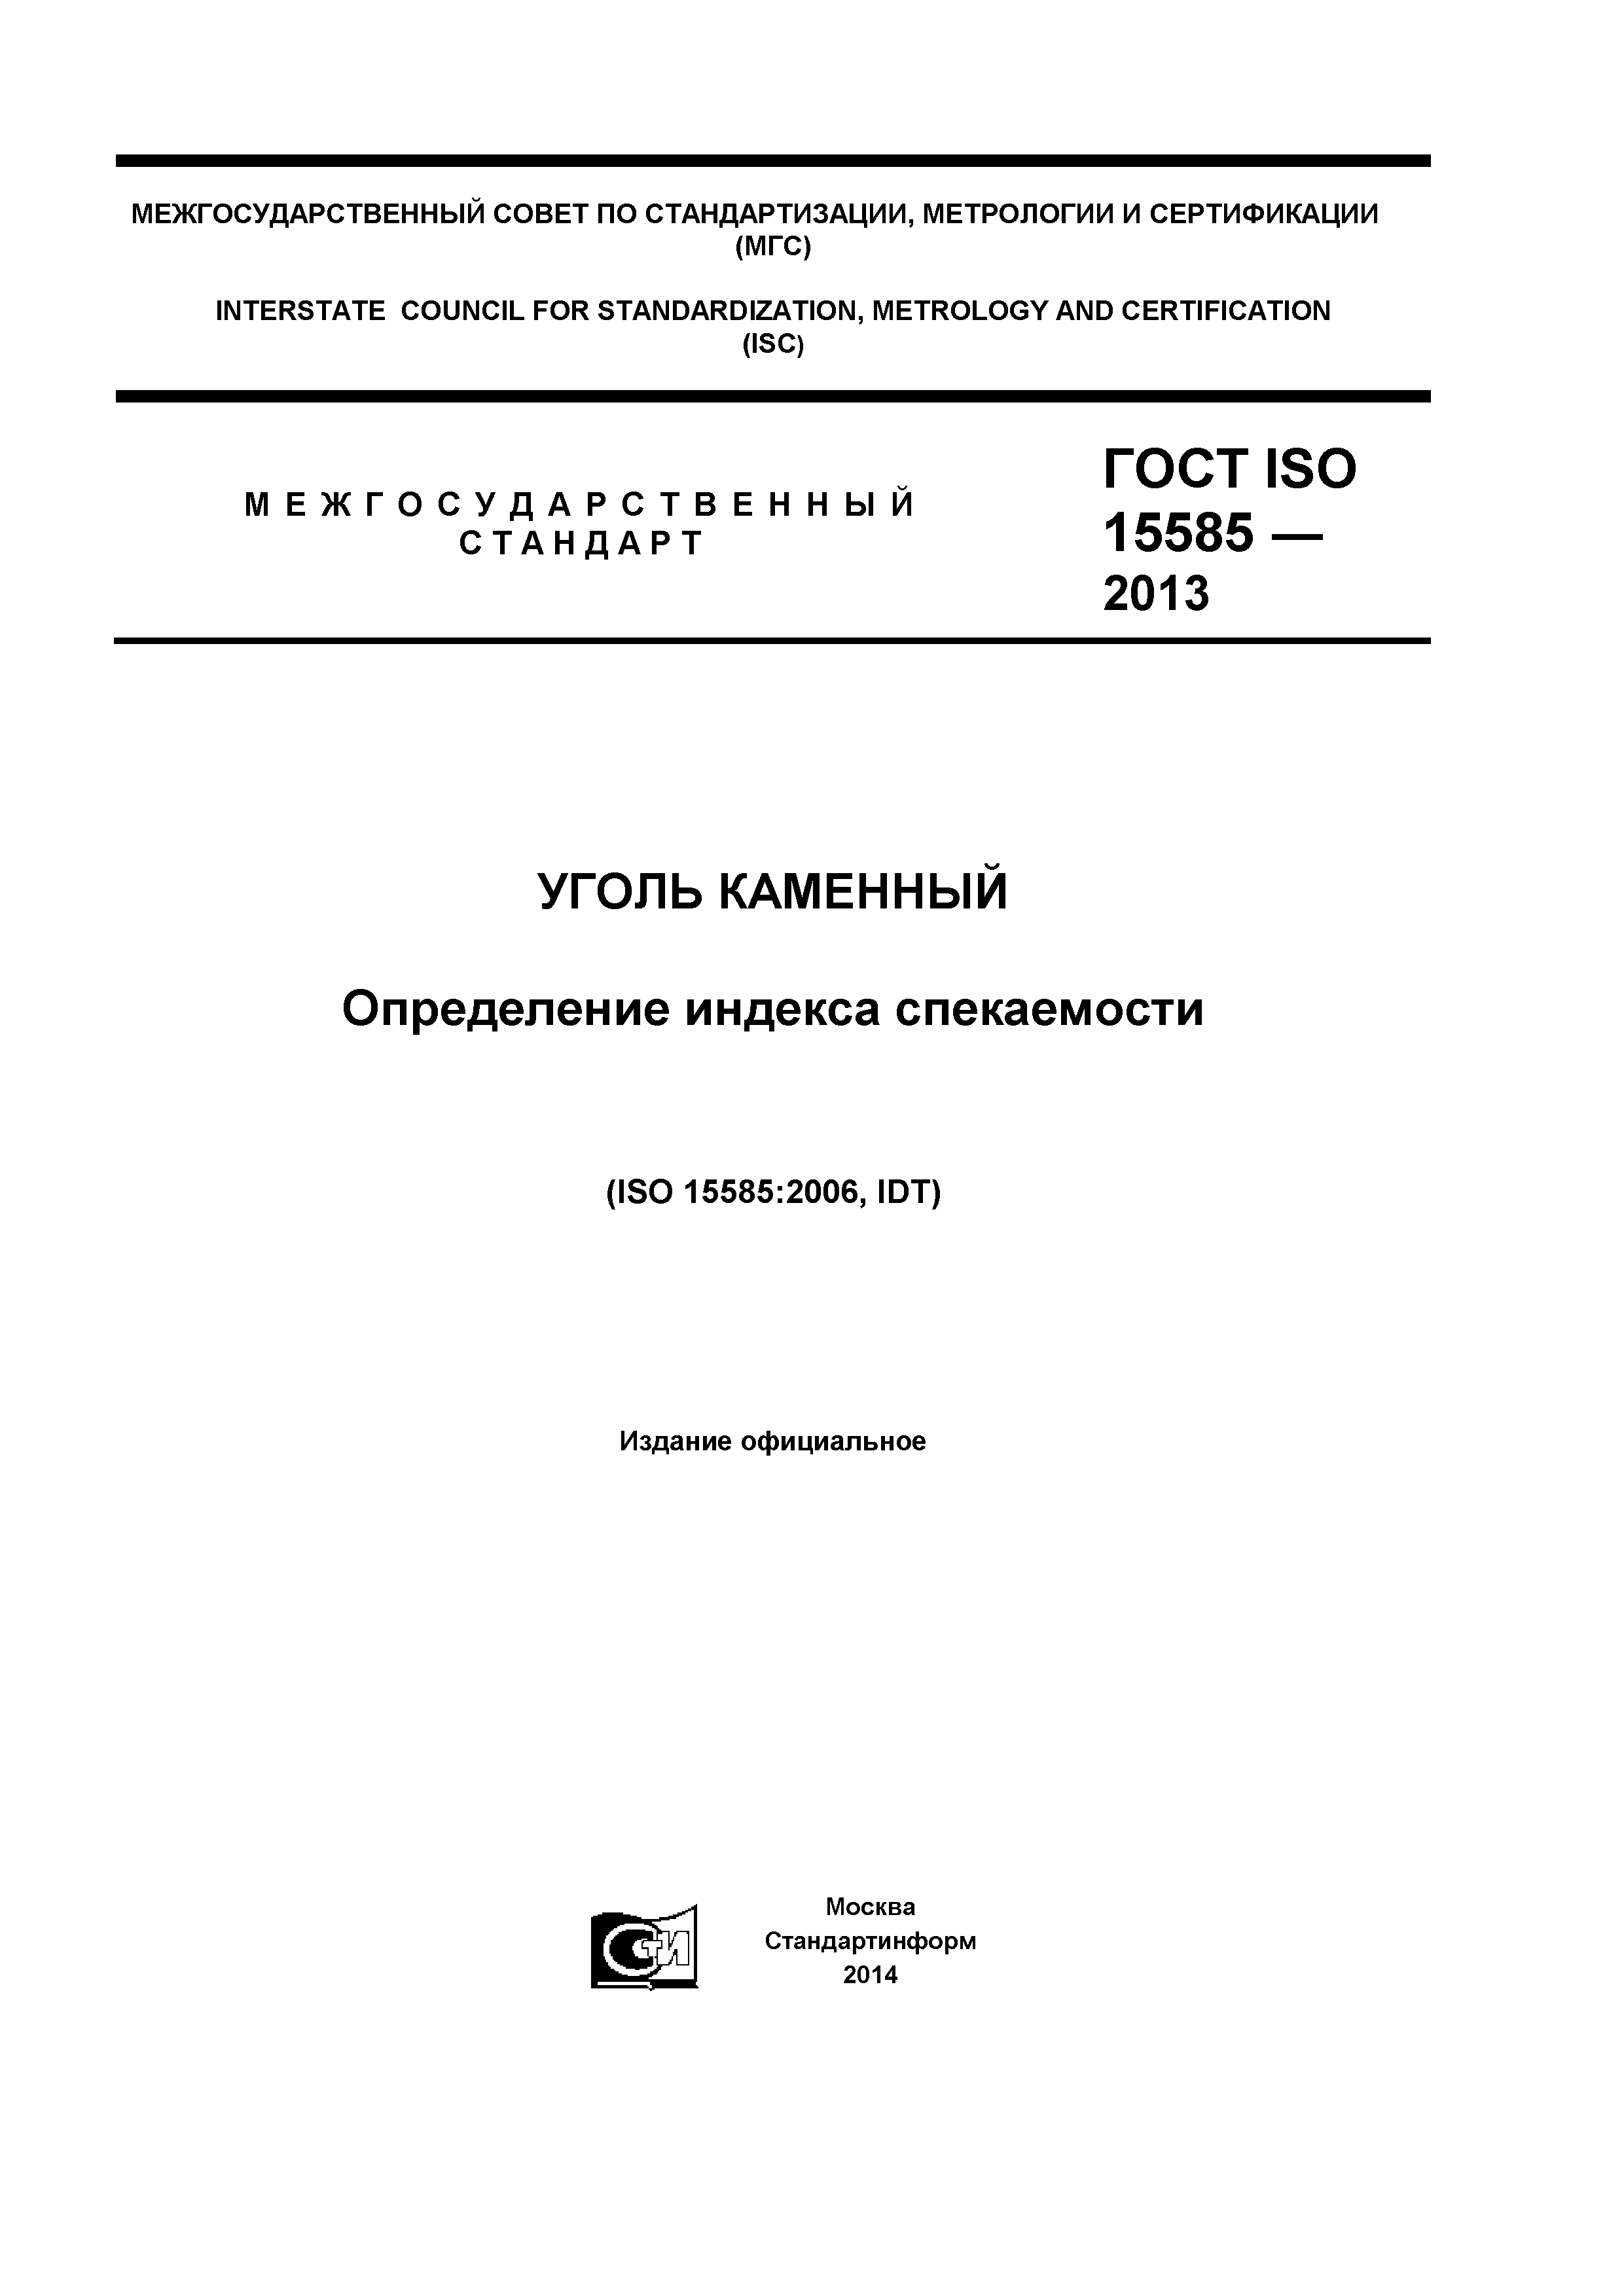 ГОСТ ISO 15585-2013